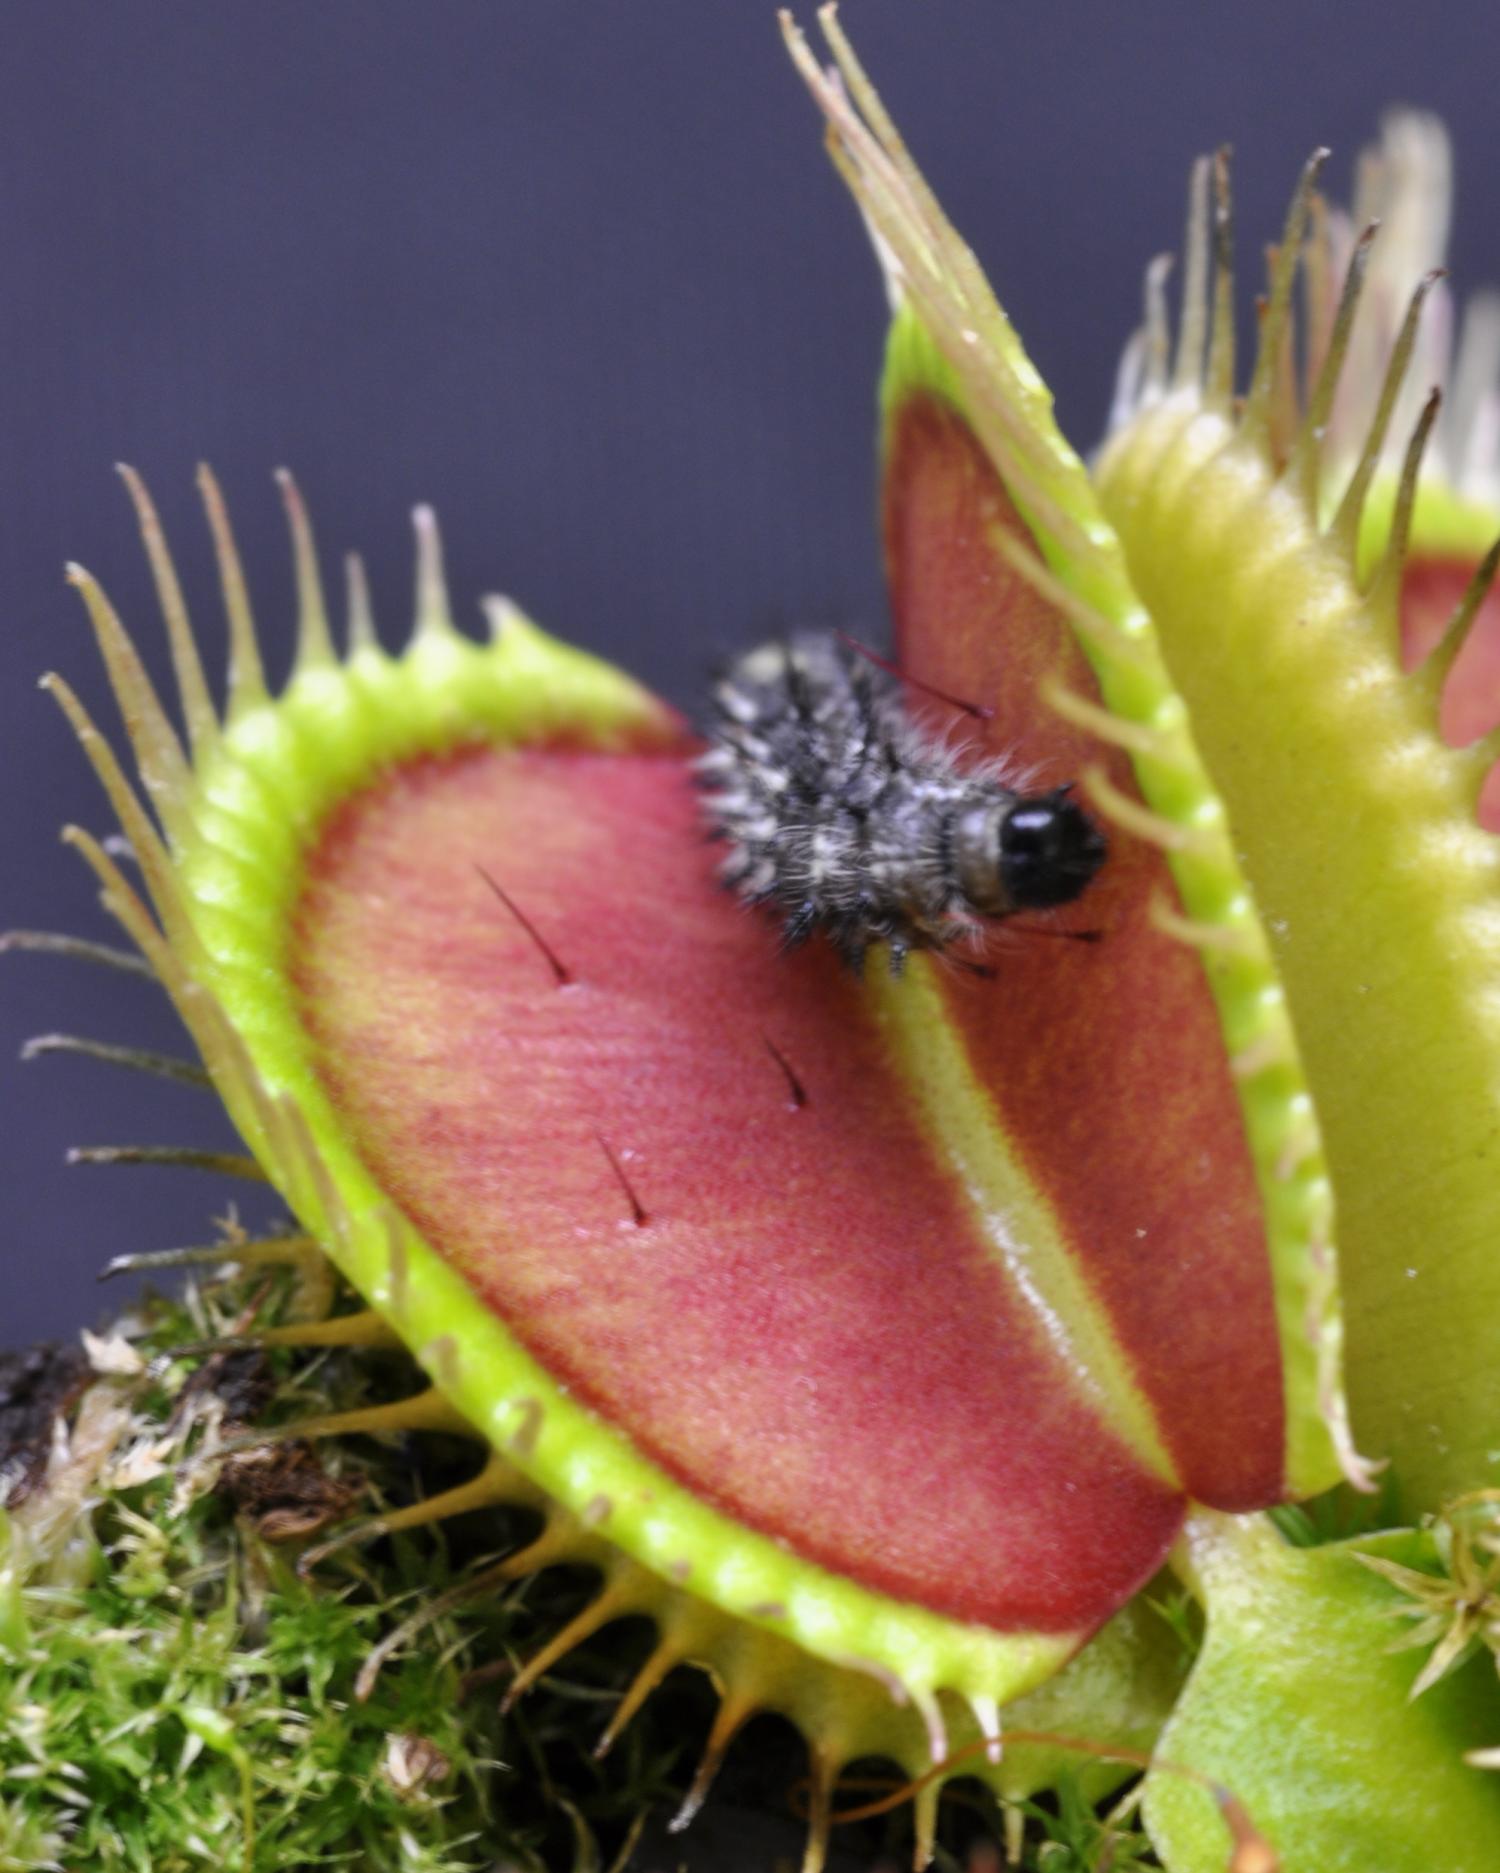 Venus flytrap exploits plant defenses in carnivorous lifestyle